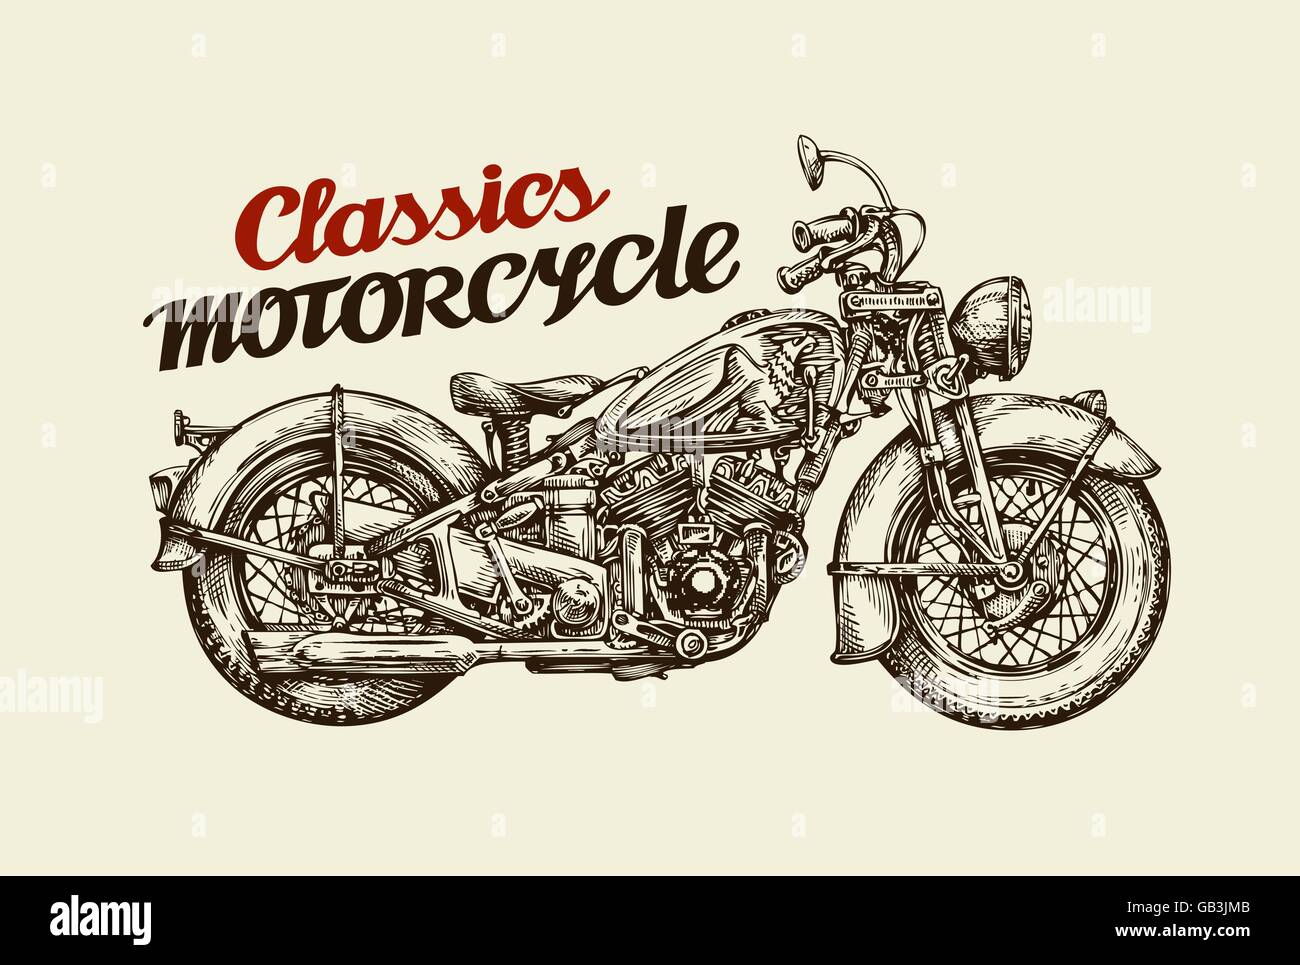 Classics motocicletta. Disegnato a mano moto d'epoca. Illustrazione Vettoriale Illustrazione Vettoriale